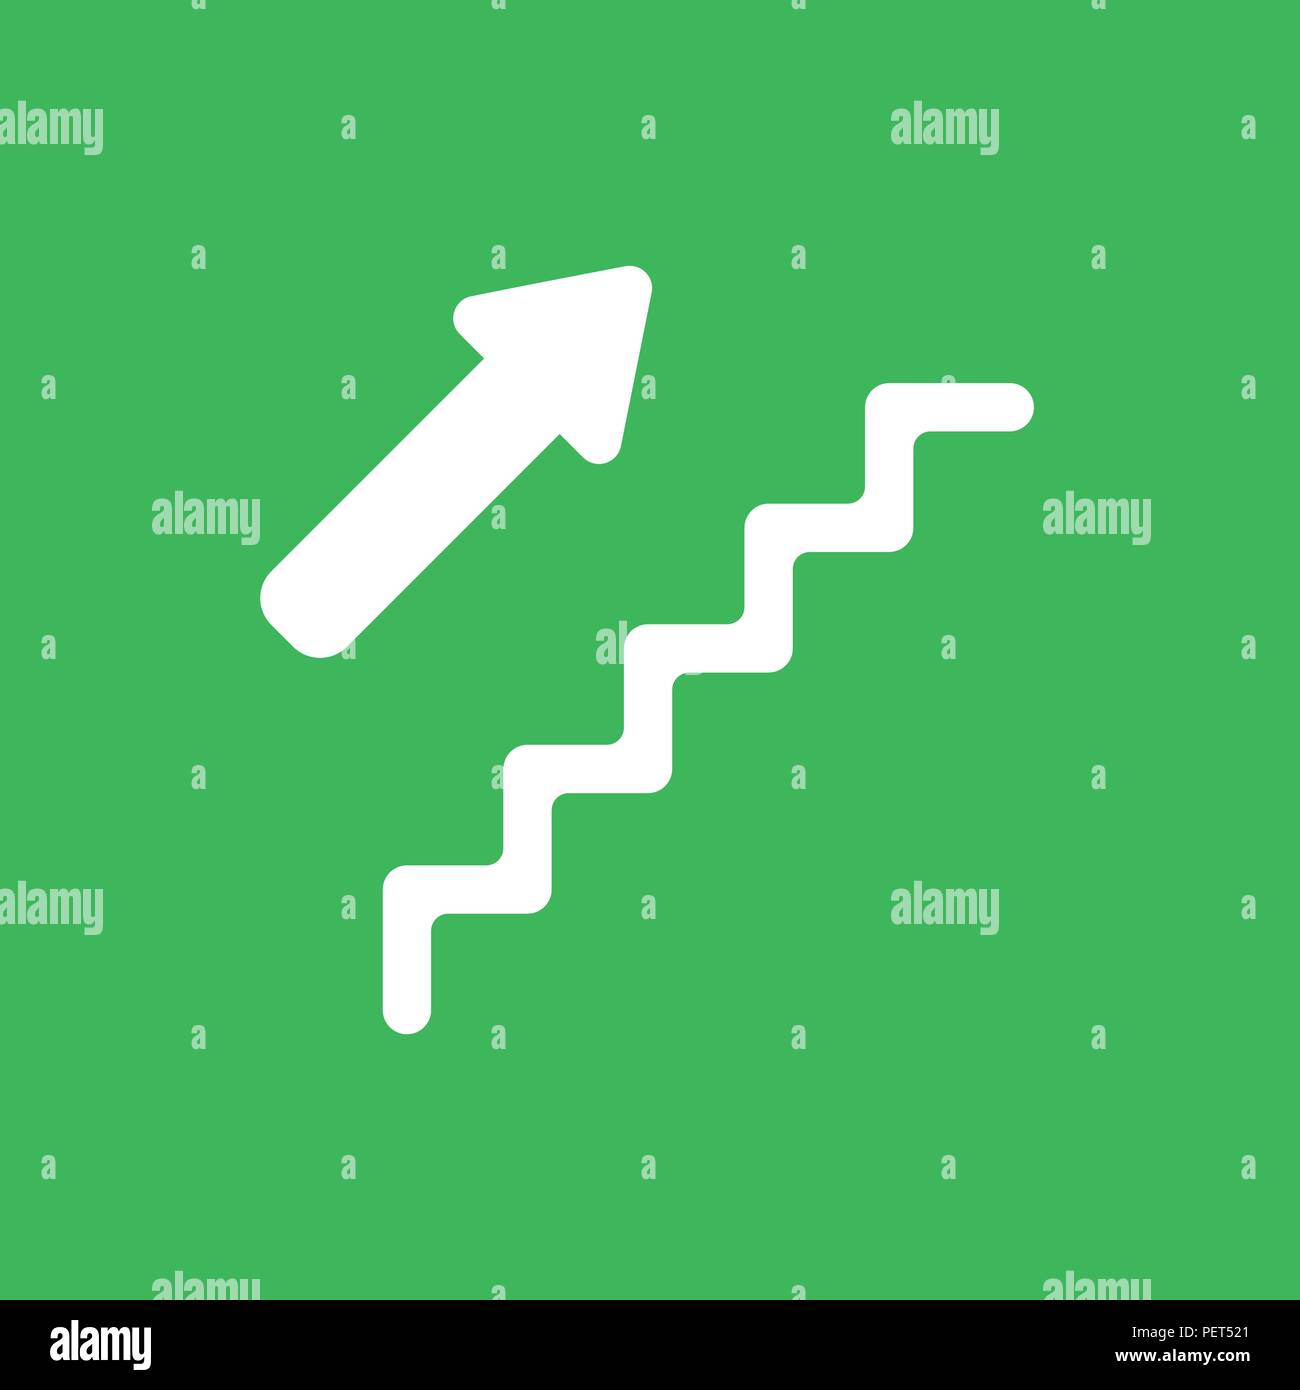 Flache vektorsymbol Konzept der Treppe mit Pfeil nach oben auf grünem Hintergrund. Stock Vektor